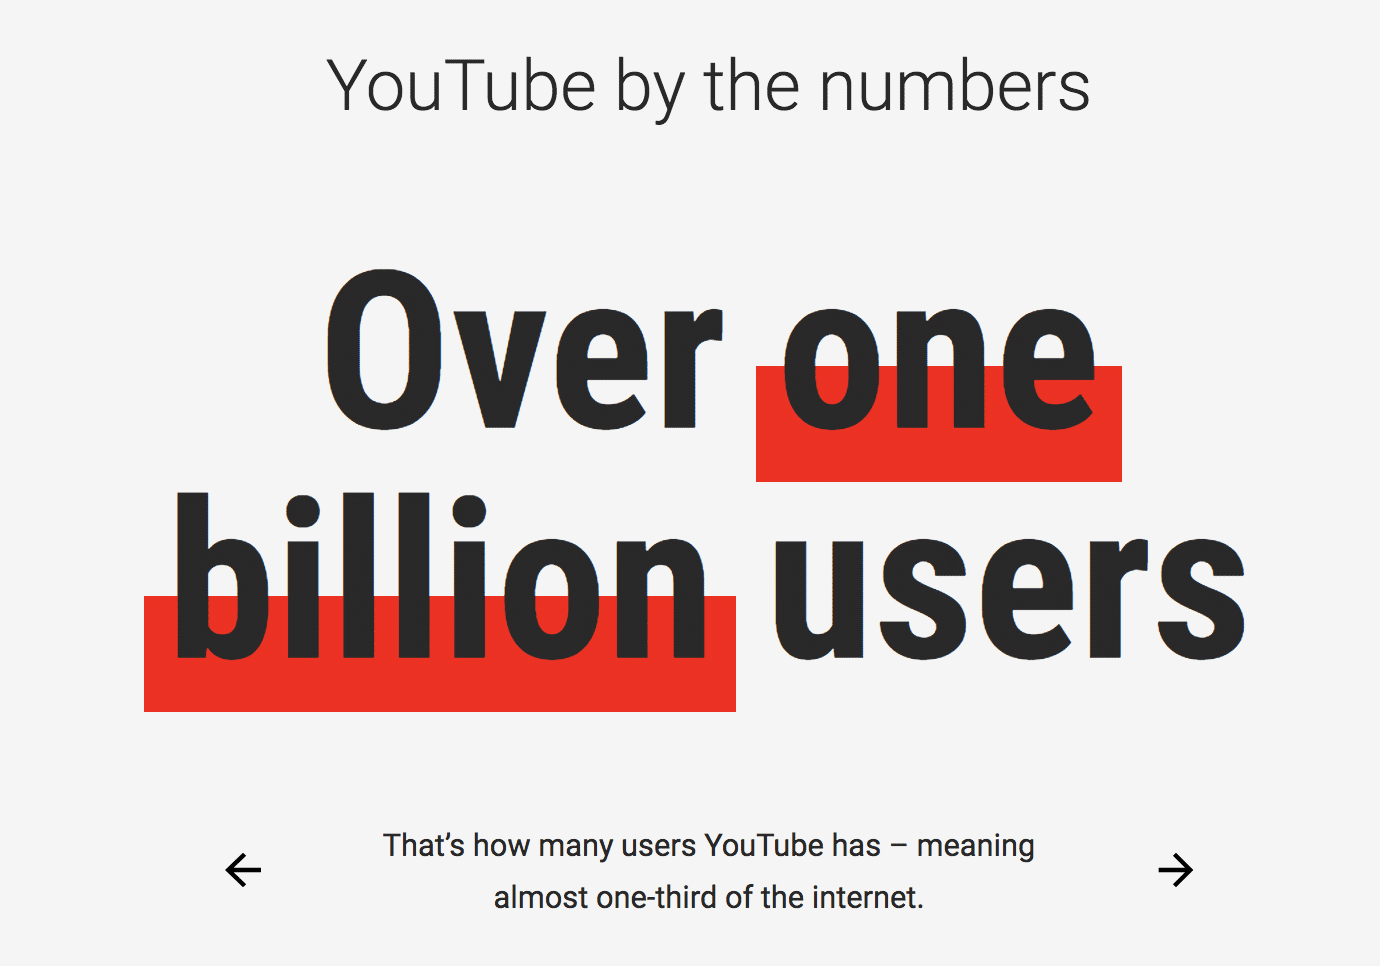 Estadísticas de YouTube